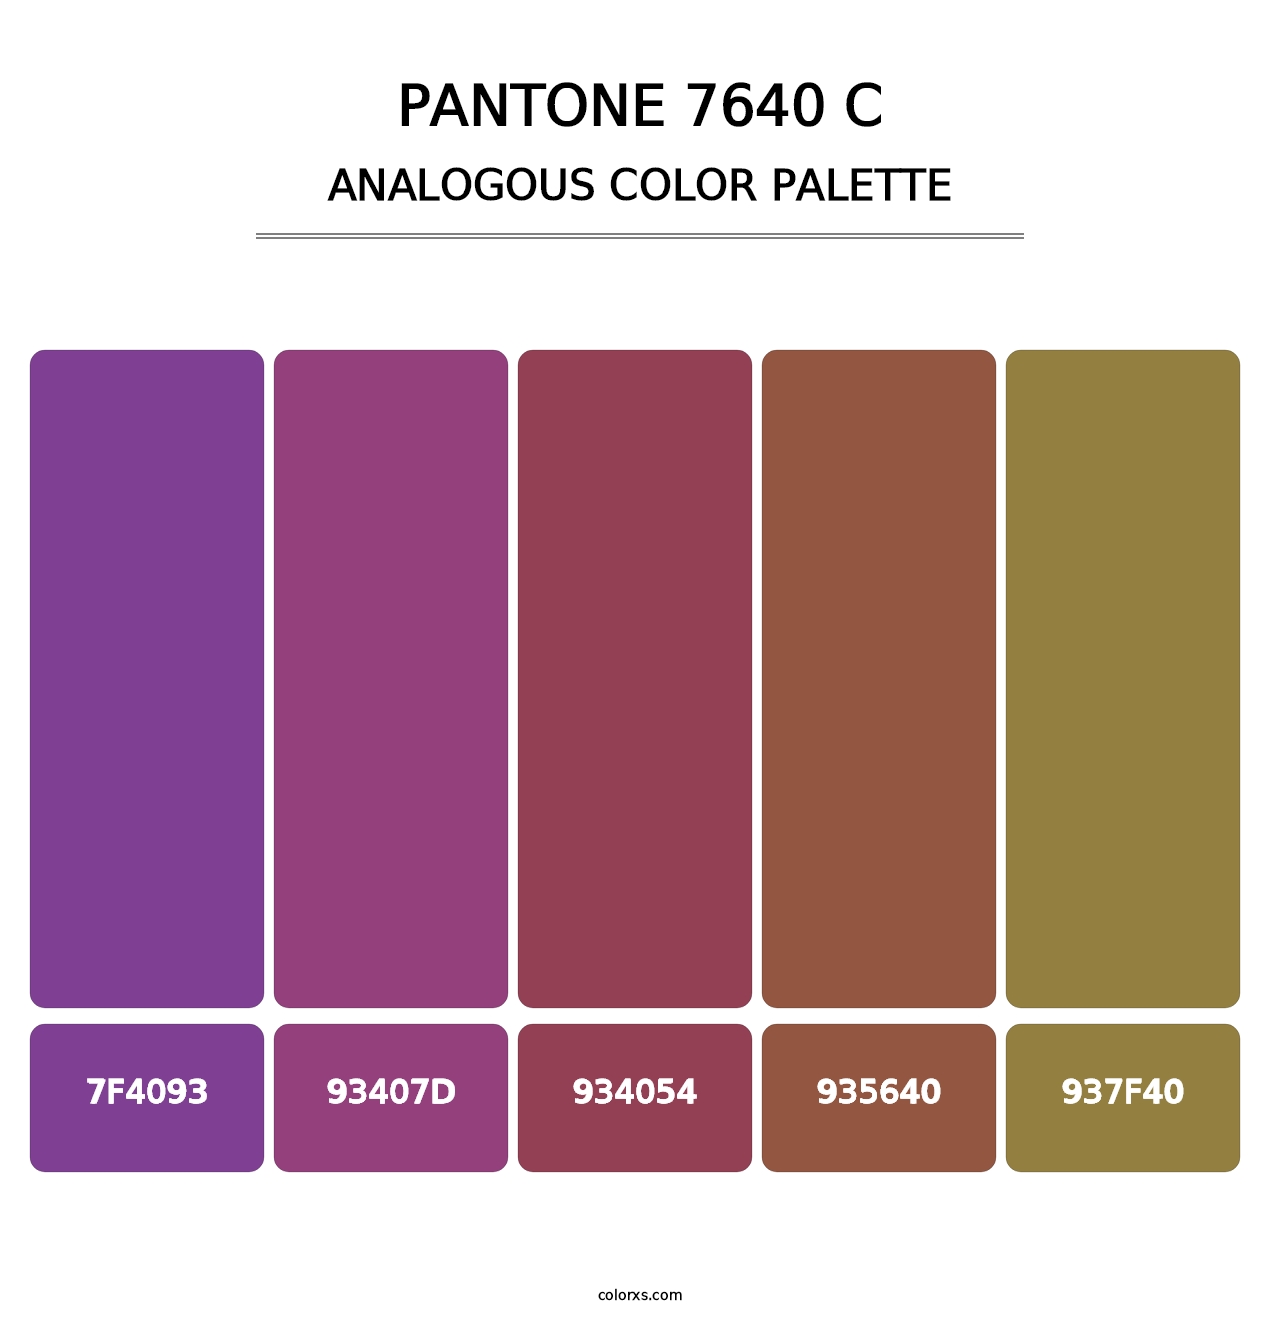 PANTONE 7640 C - Analogous Color Palette